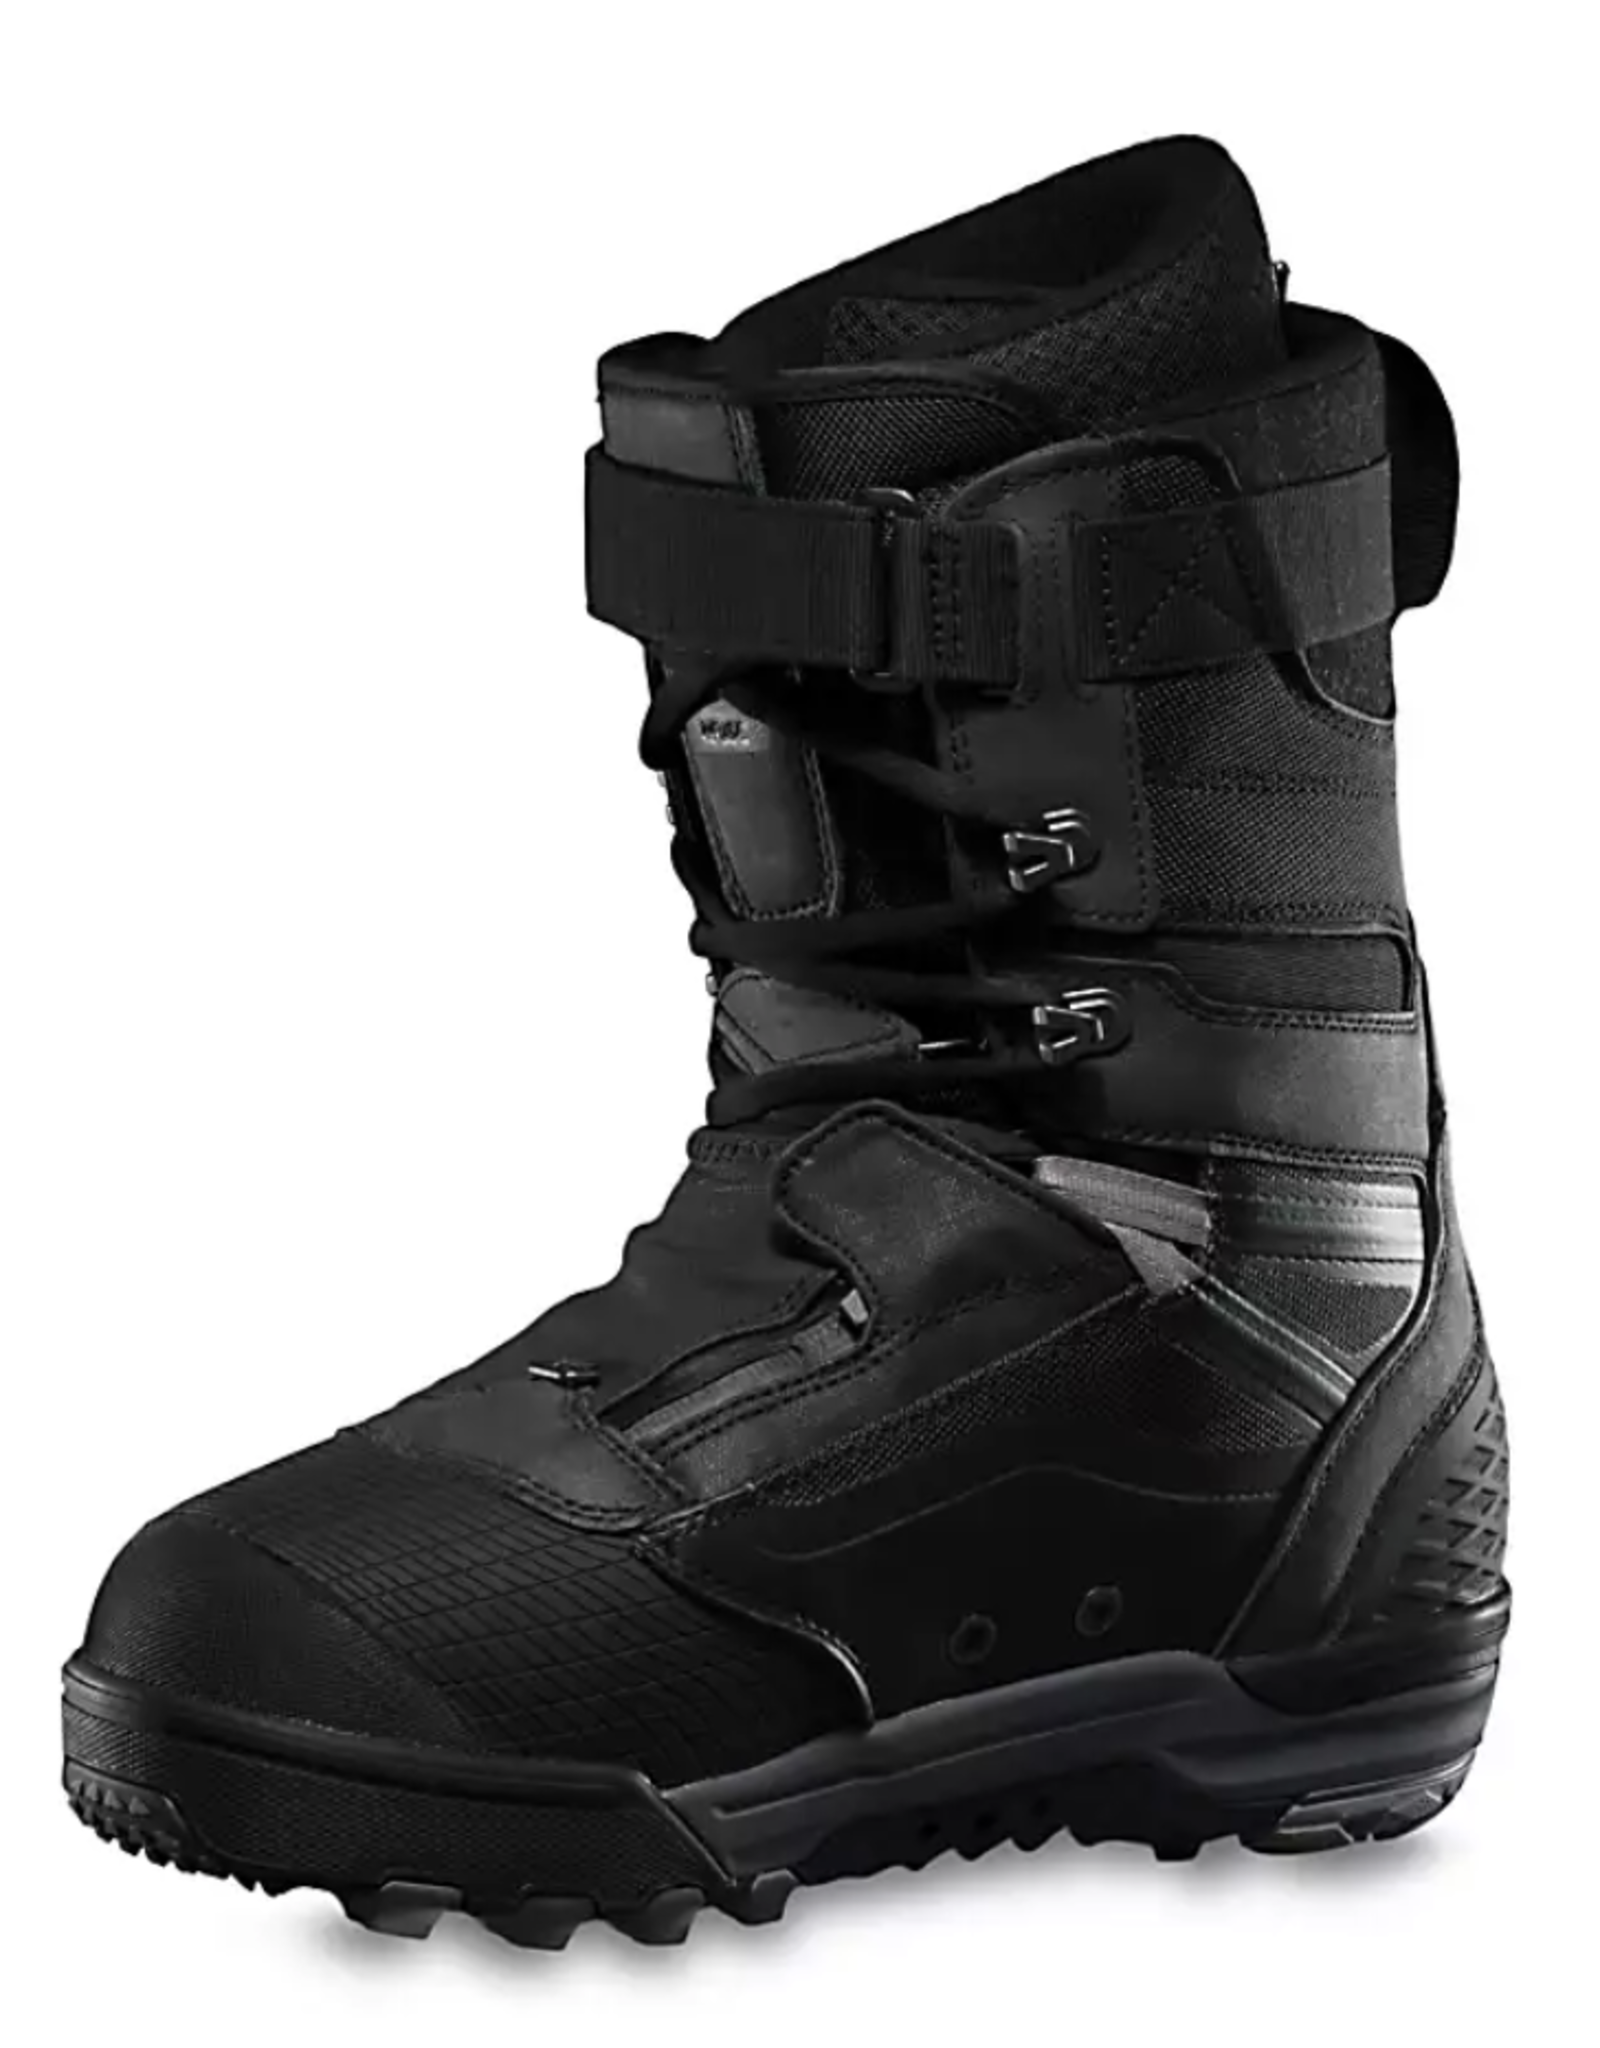 Vans Men's Infuse Snowboard Boots Black/Asphalt 2023